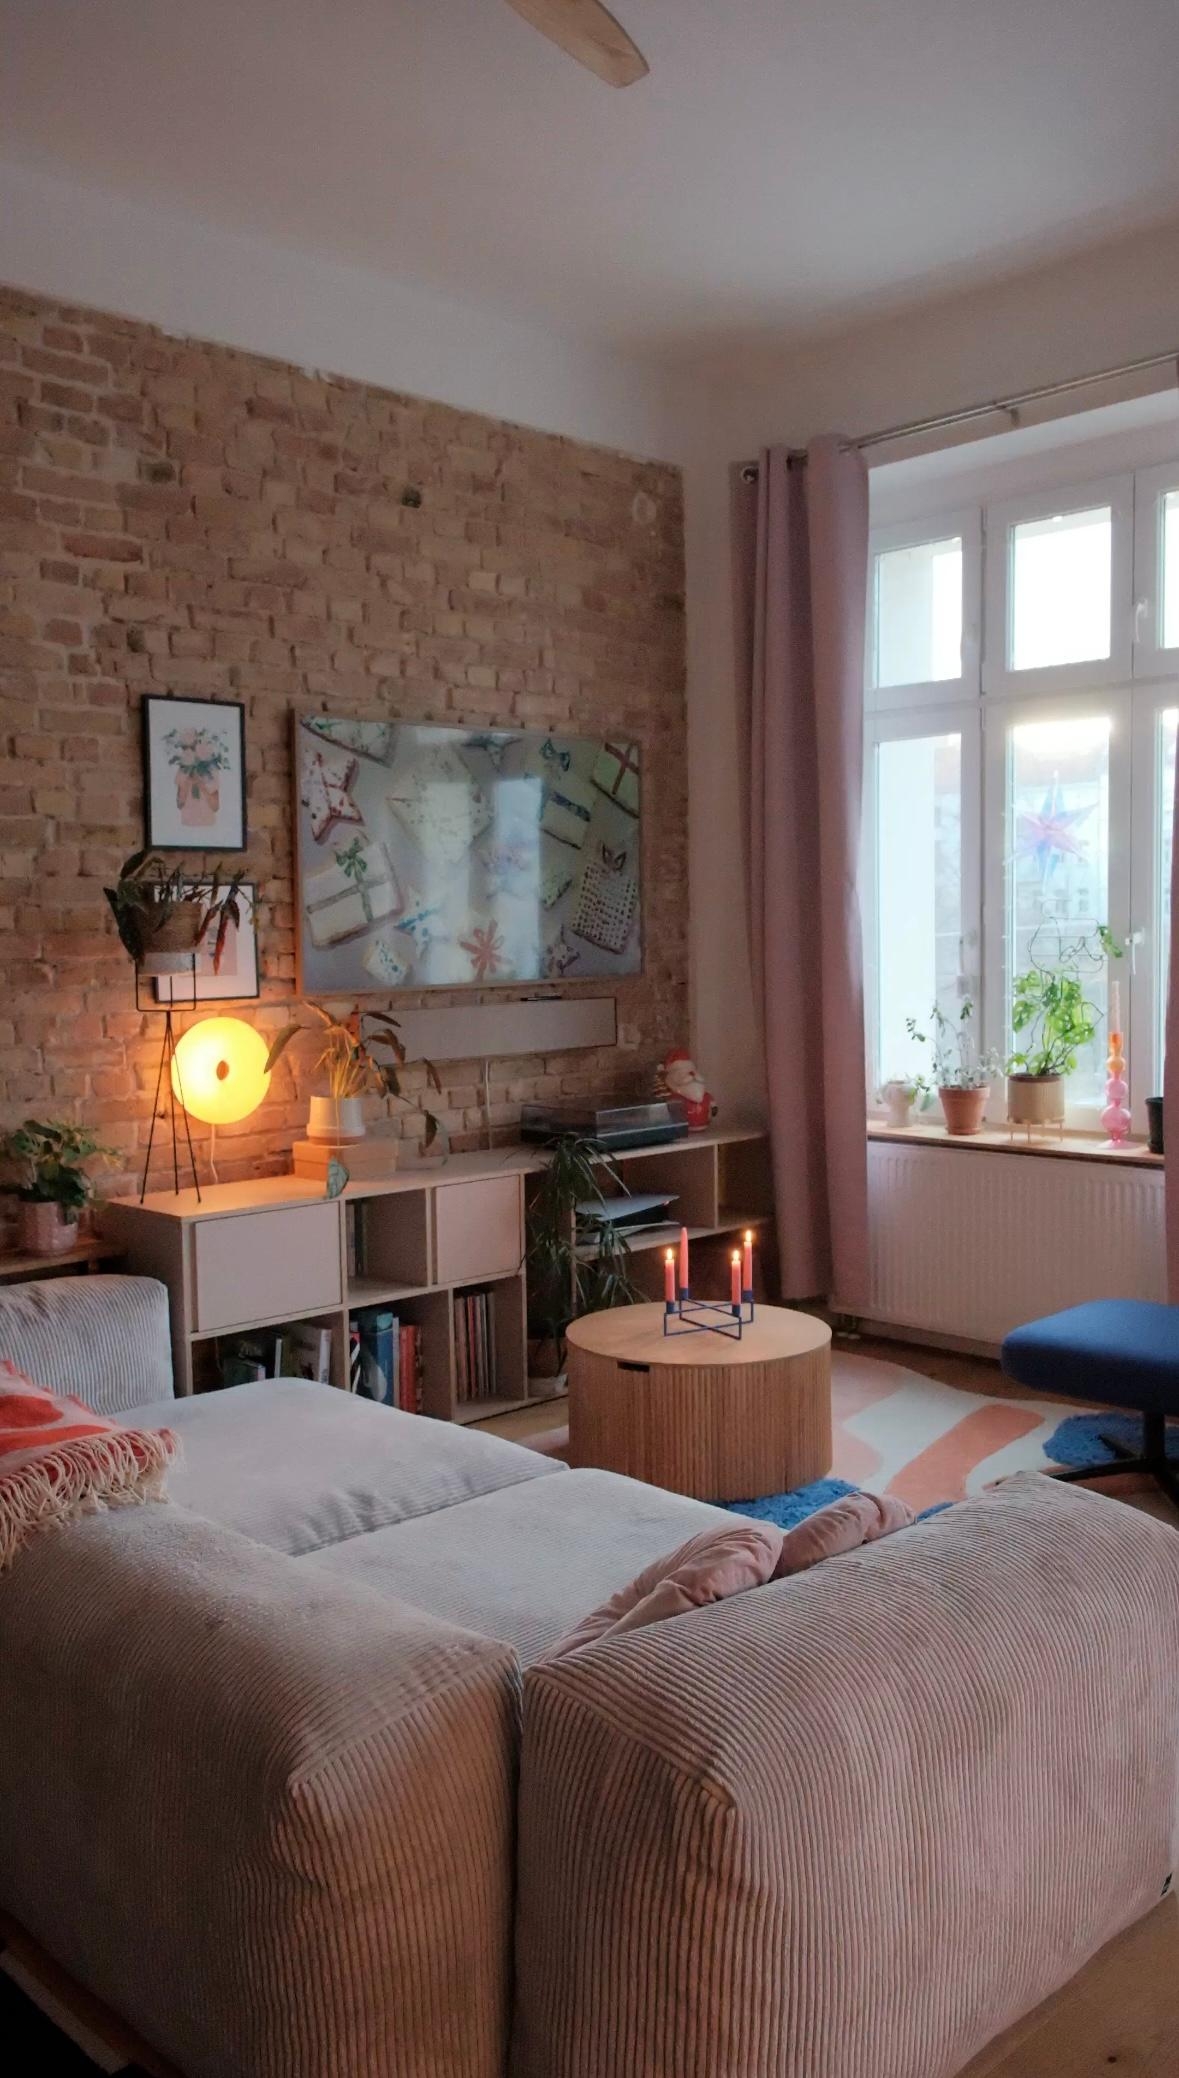 #wohnzimmer #altbauwohnung #couchliebt #gemütlich #farbenfroh #backsteinwand #tv #sofa